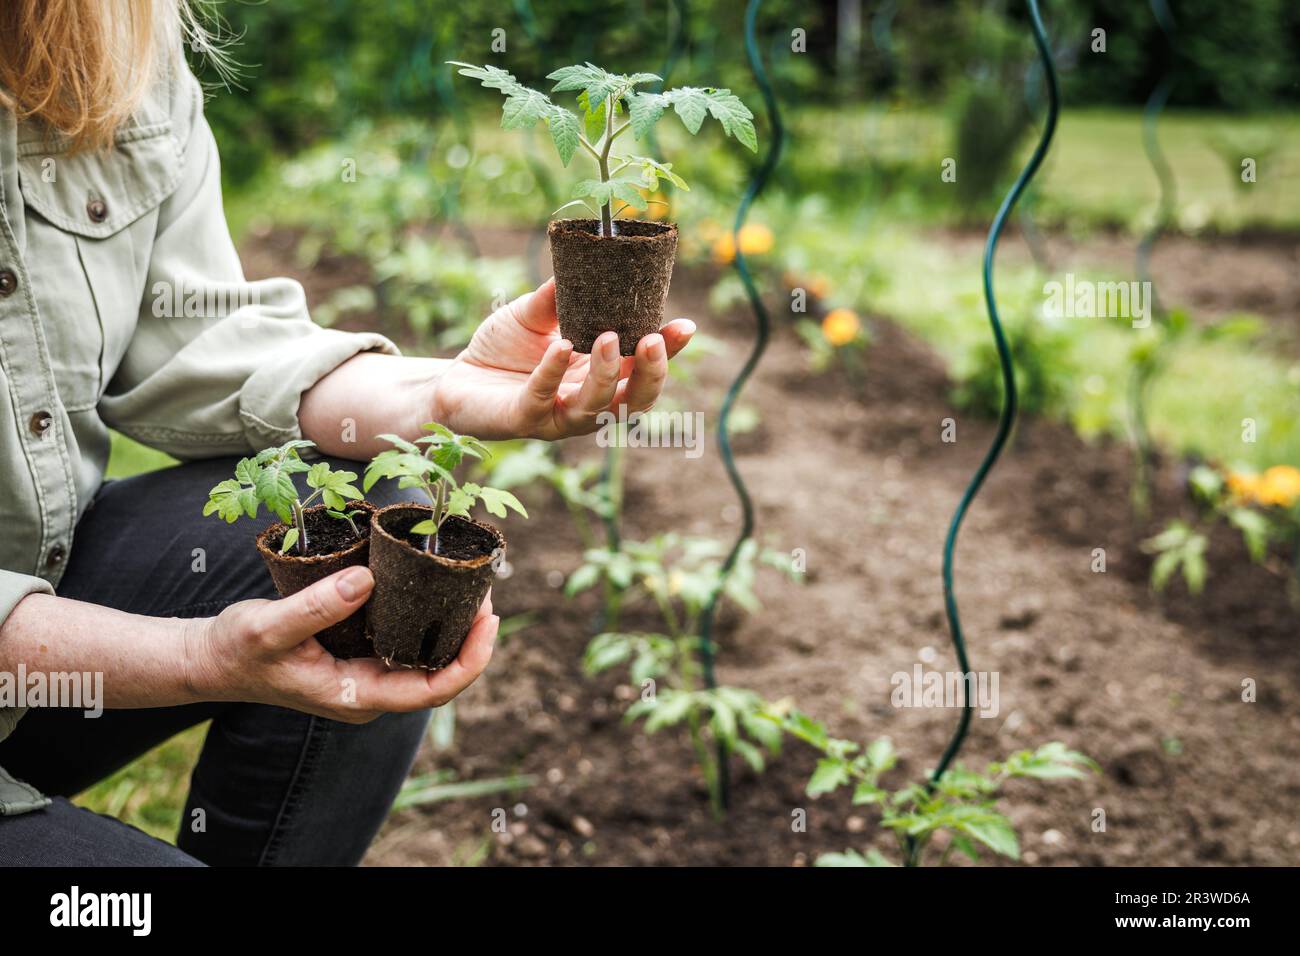 Jardinage biologique durable dans le potager. Fermier tenant des plants de tomate dans un pot de tourbe biodégradable Banque D'Images